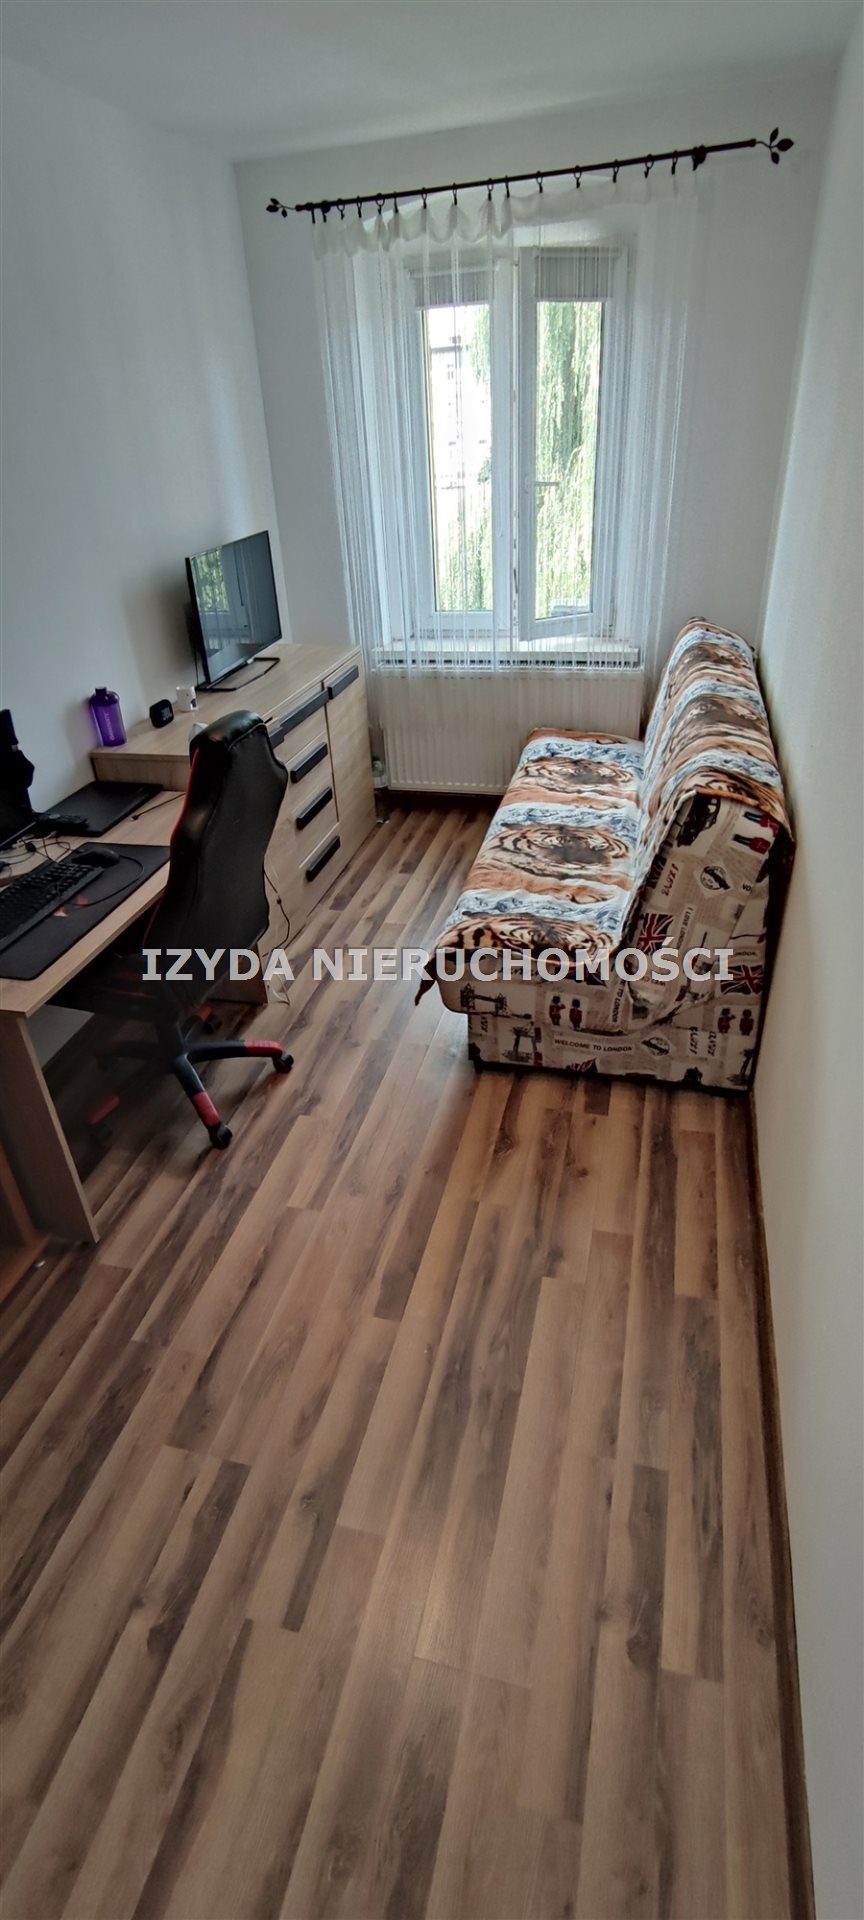 Mieszkanie trzypokojowe na sprzedaż Jaworzyna Śląska  60m2 Foto 6